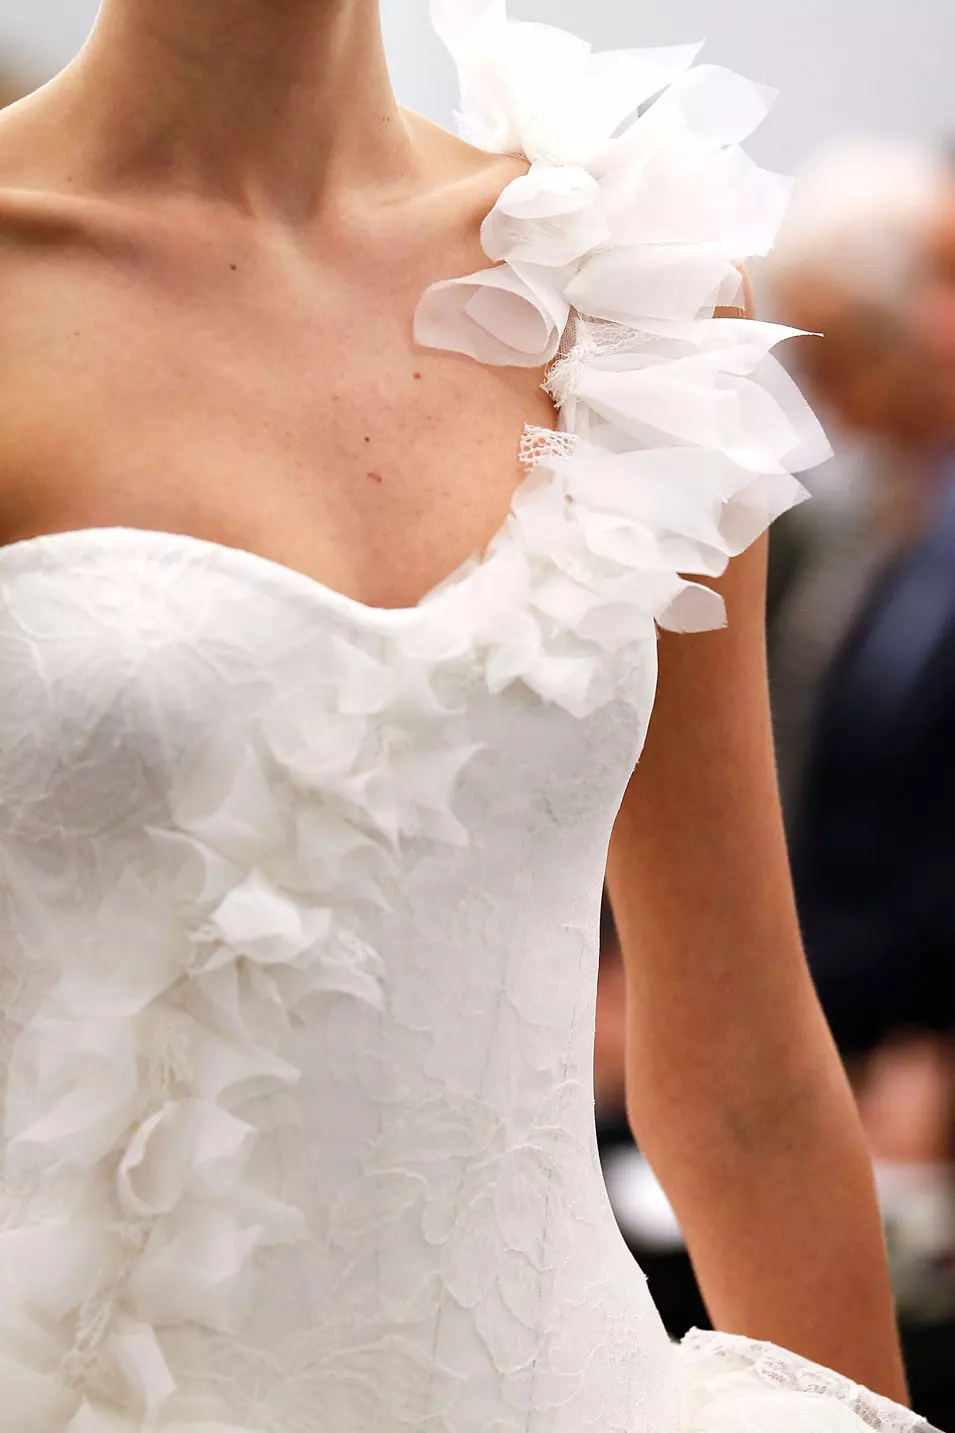 פרט משמלת כלה מקולקציית סתיו 2013 בעיצוב וירה וונג אשר הוצגה בשבוע האופנה לכלות, ניו יורק, אוקטובר 2012